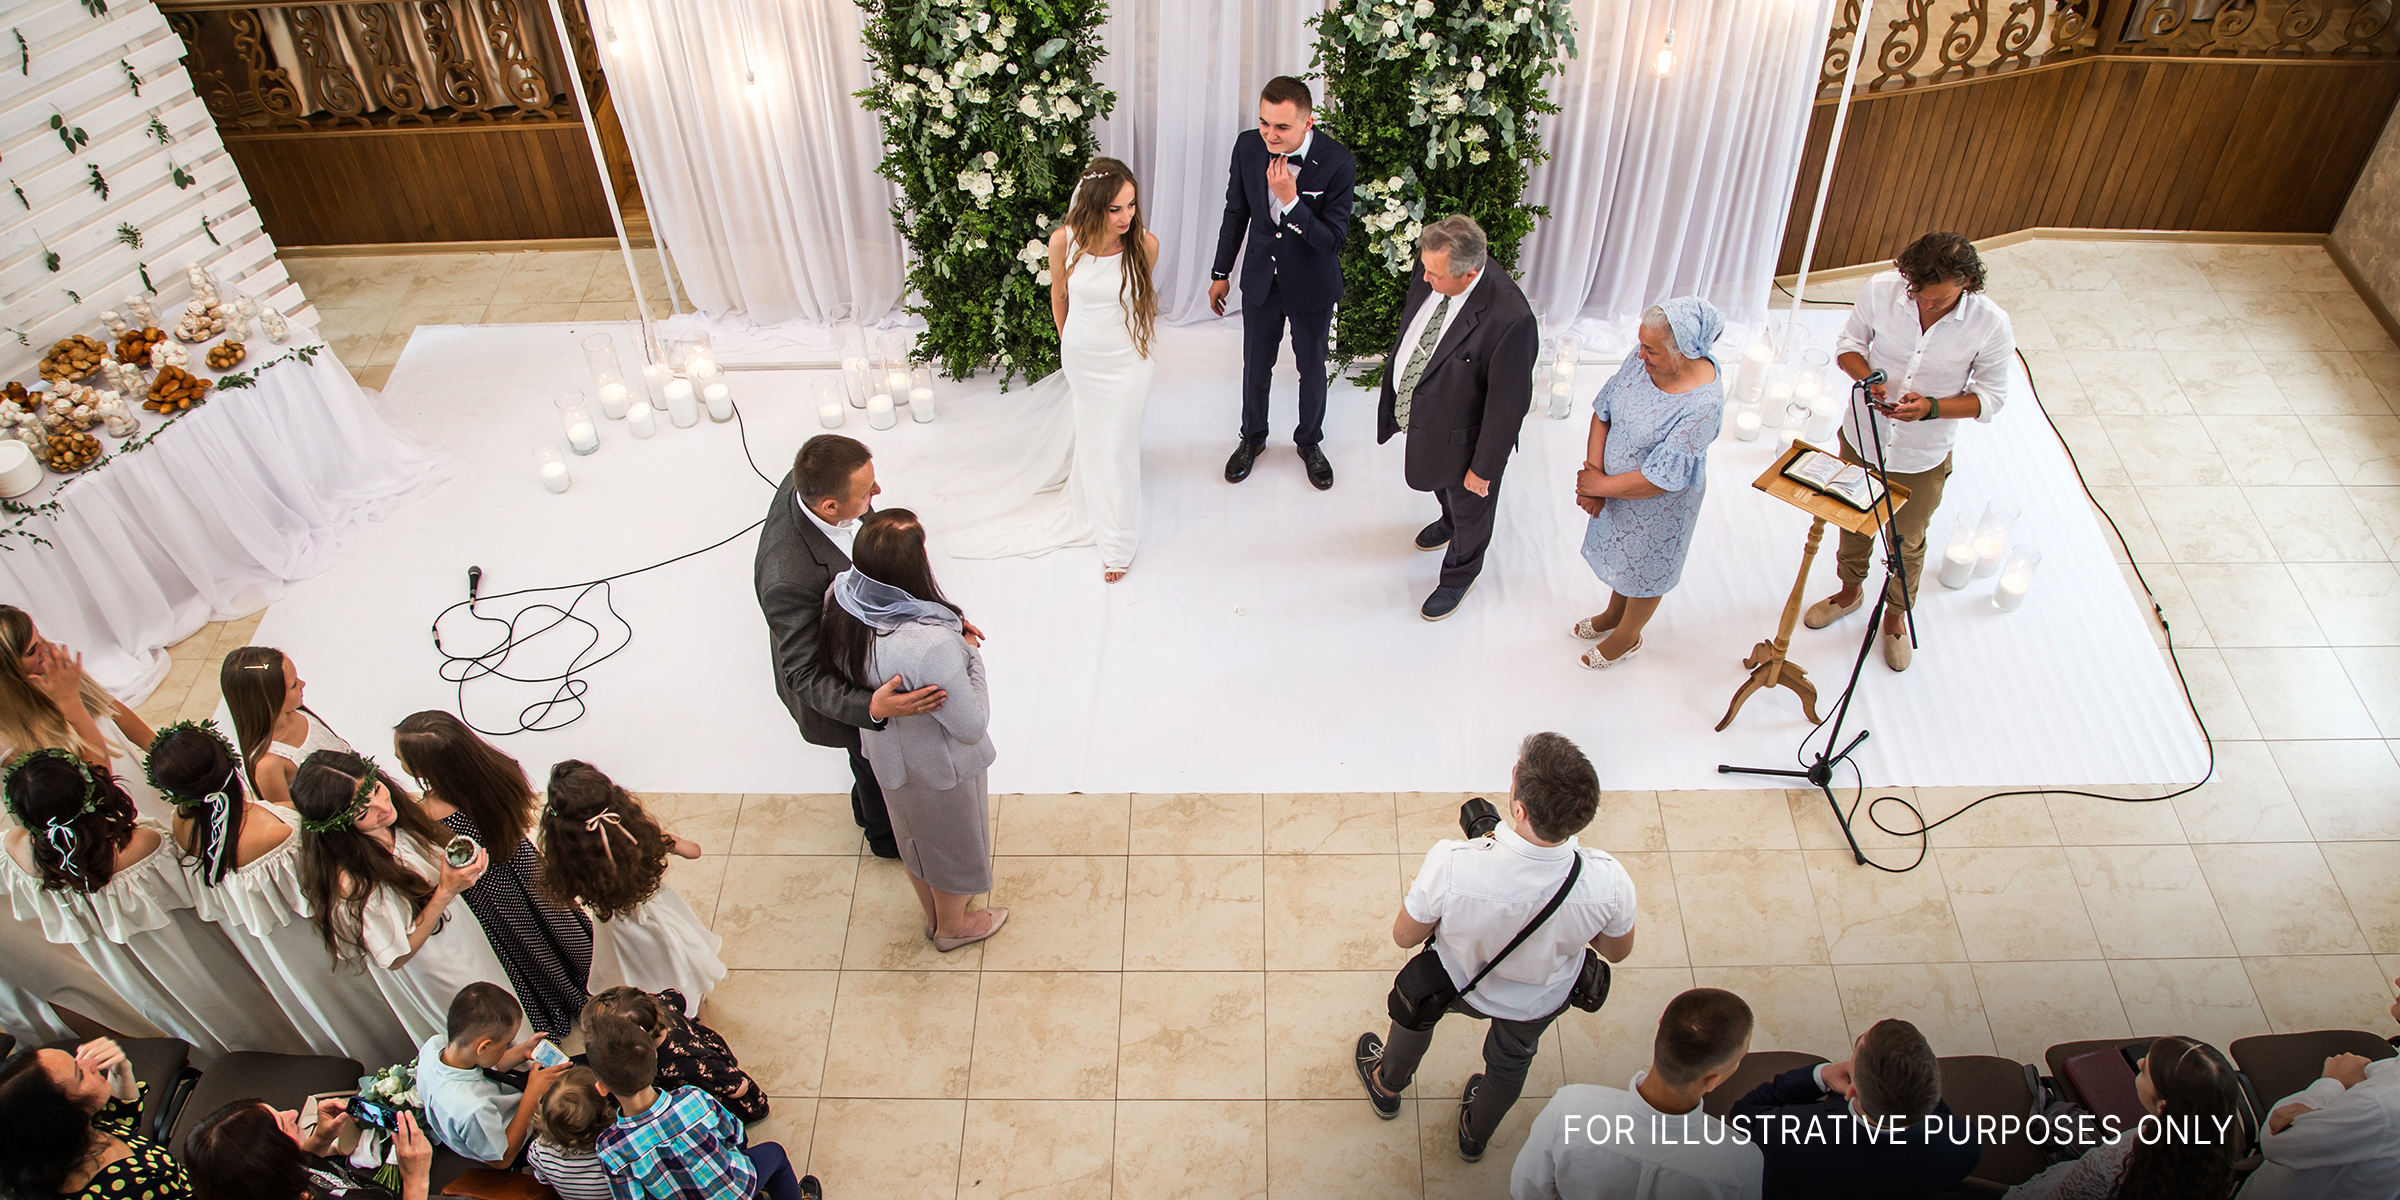 Eine Hochzeitszeremonie | Quelle: Shutterstock